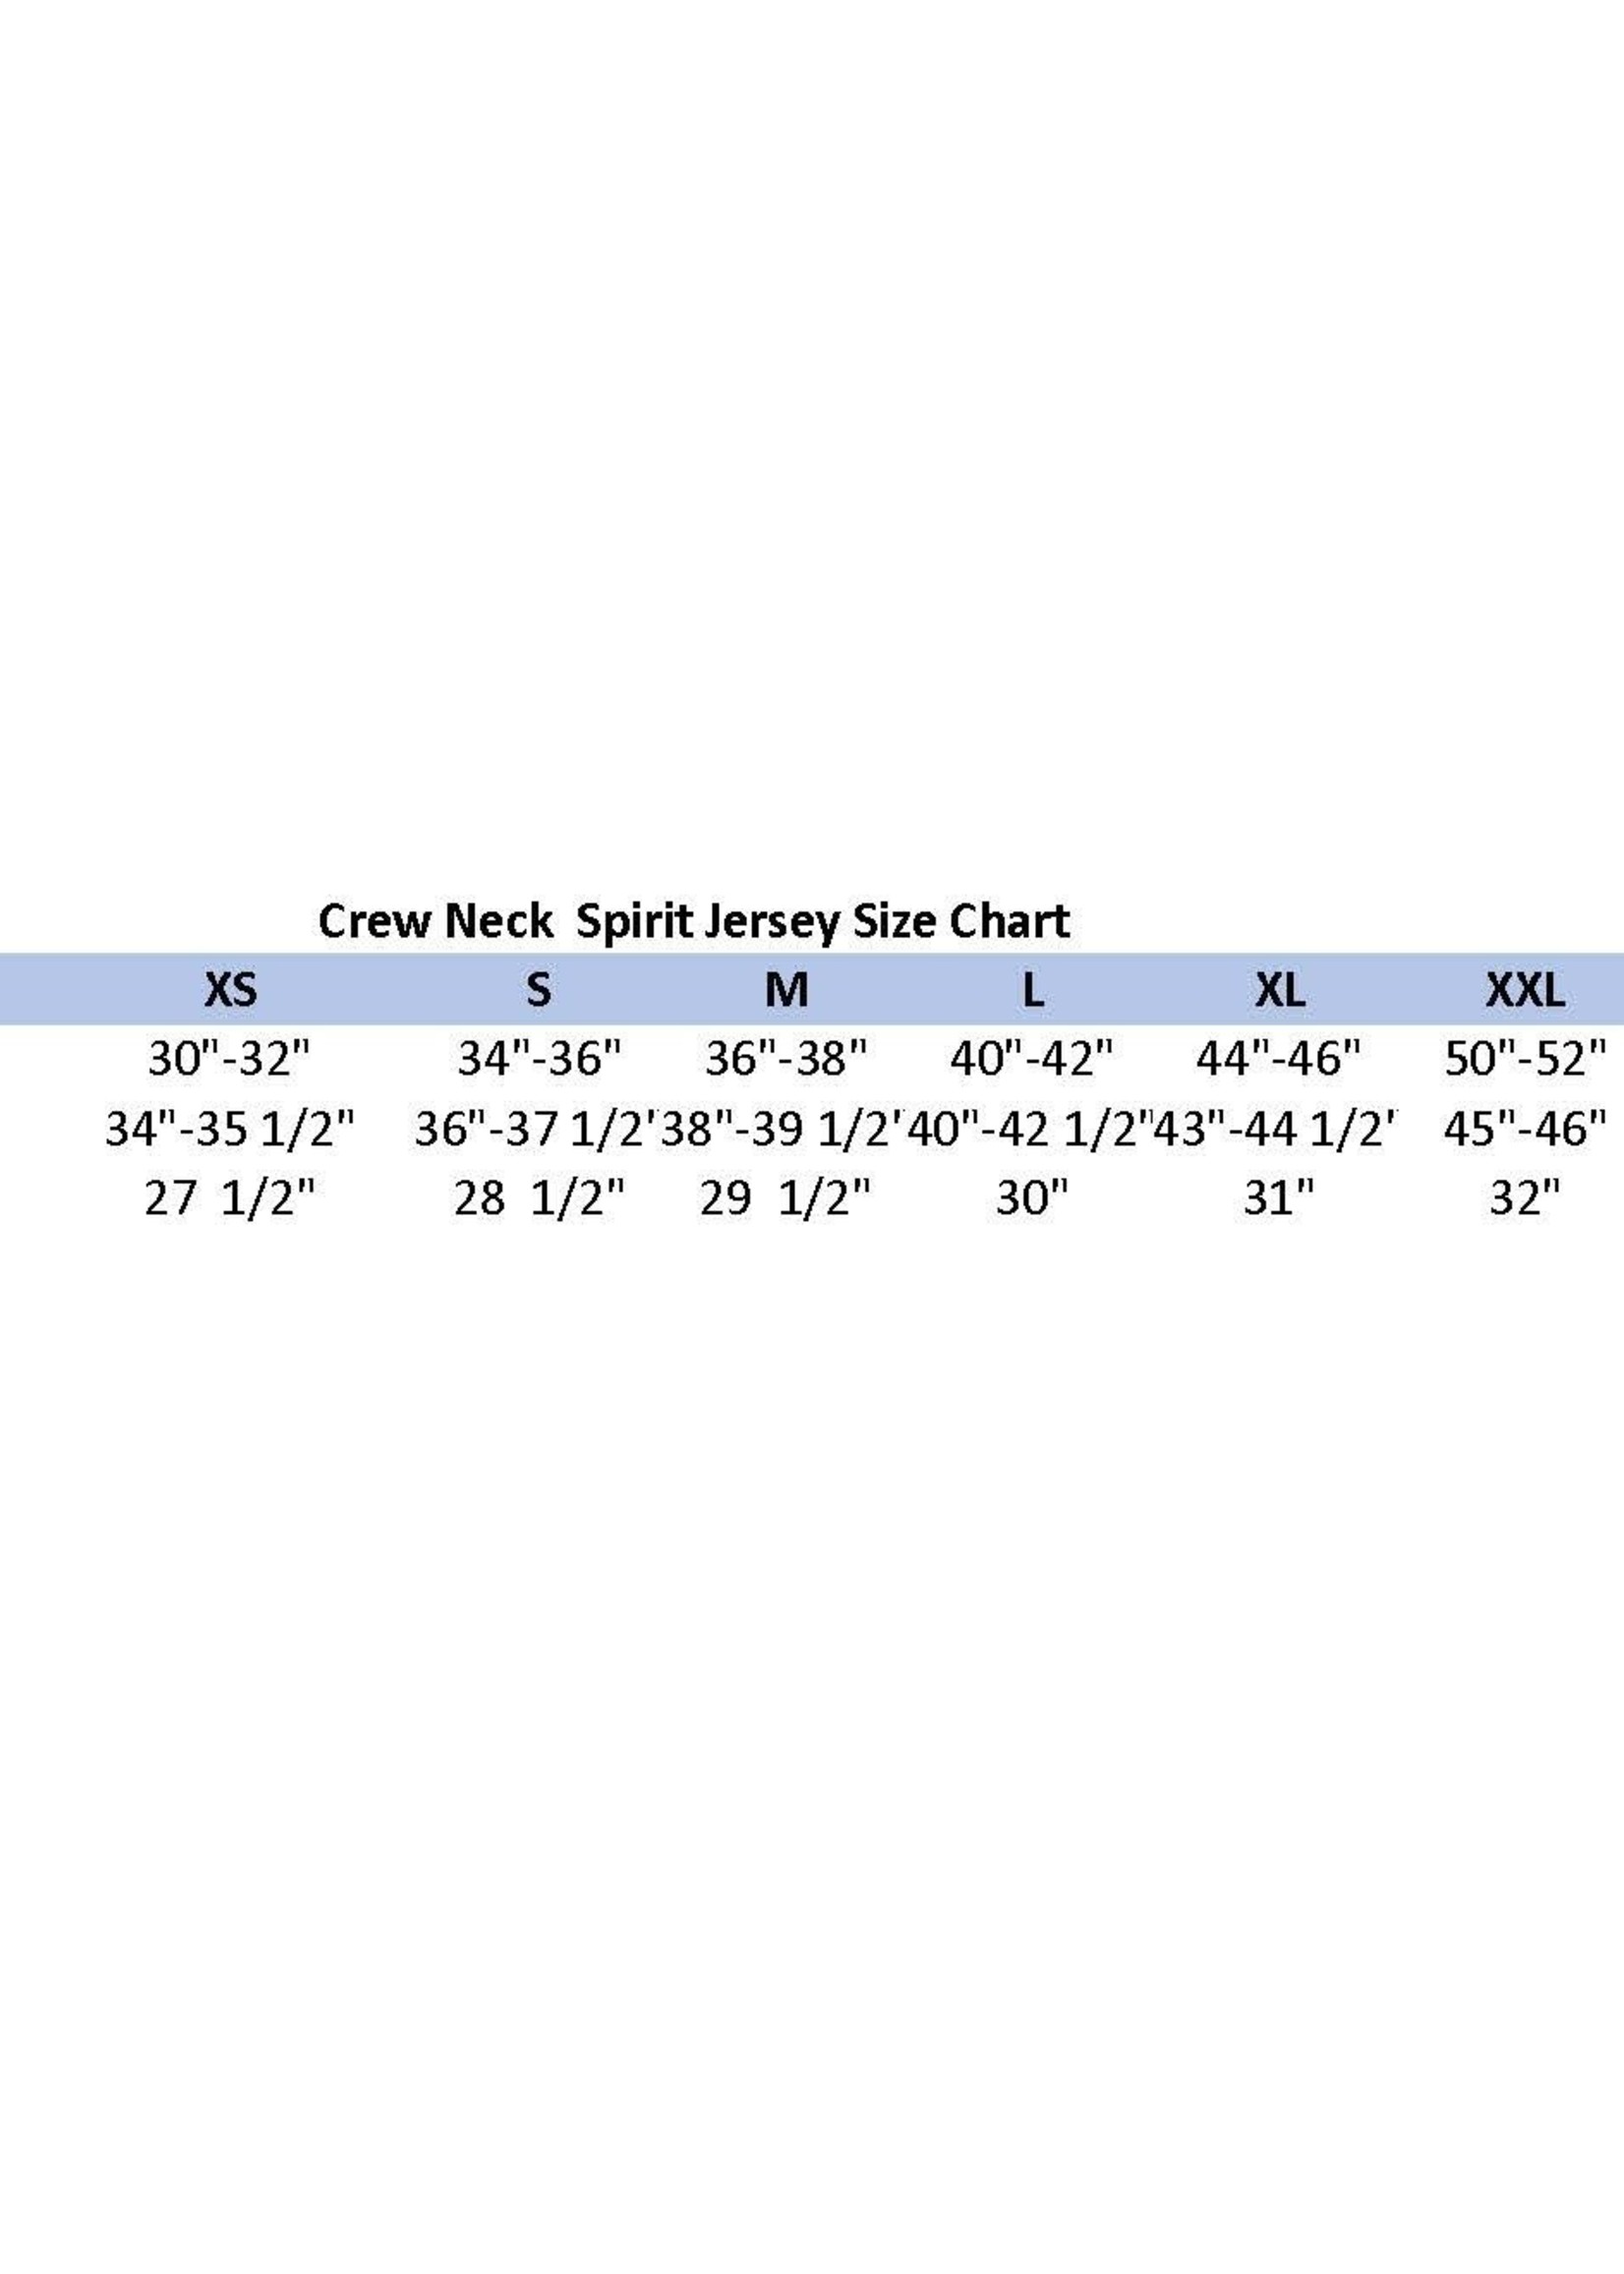 Spirit Spirit Jersey